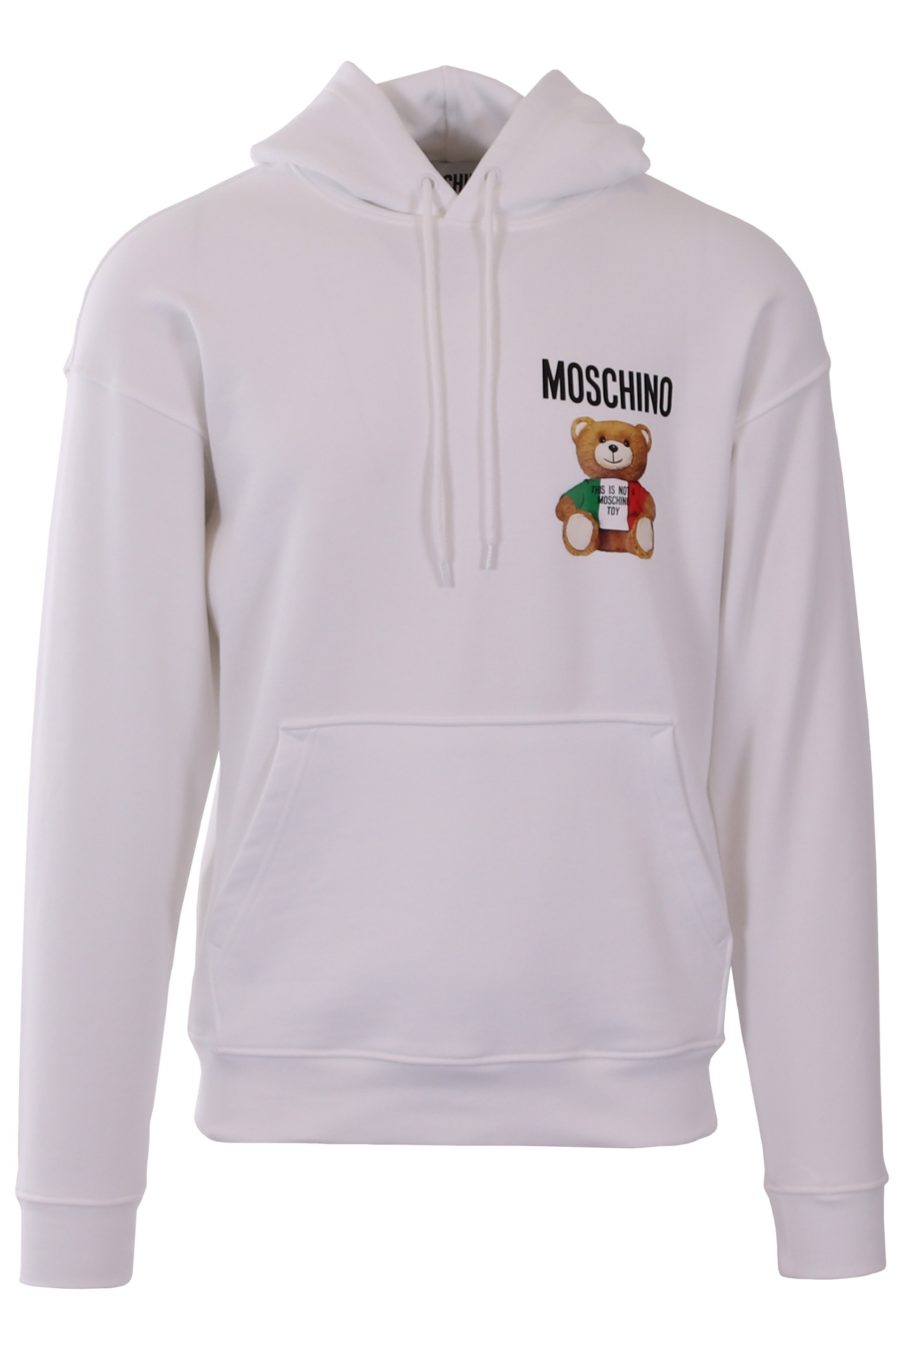 Sweatshirt Moschino Couture white hoodie Teddy in italian colours - b1f52ac85e94671827e7c0b4c04e2d02823b19e4